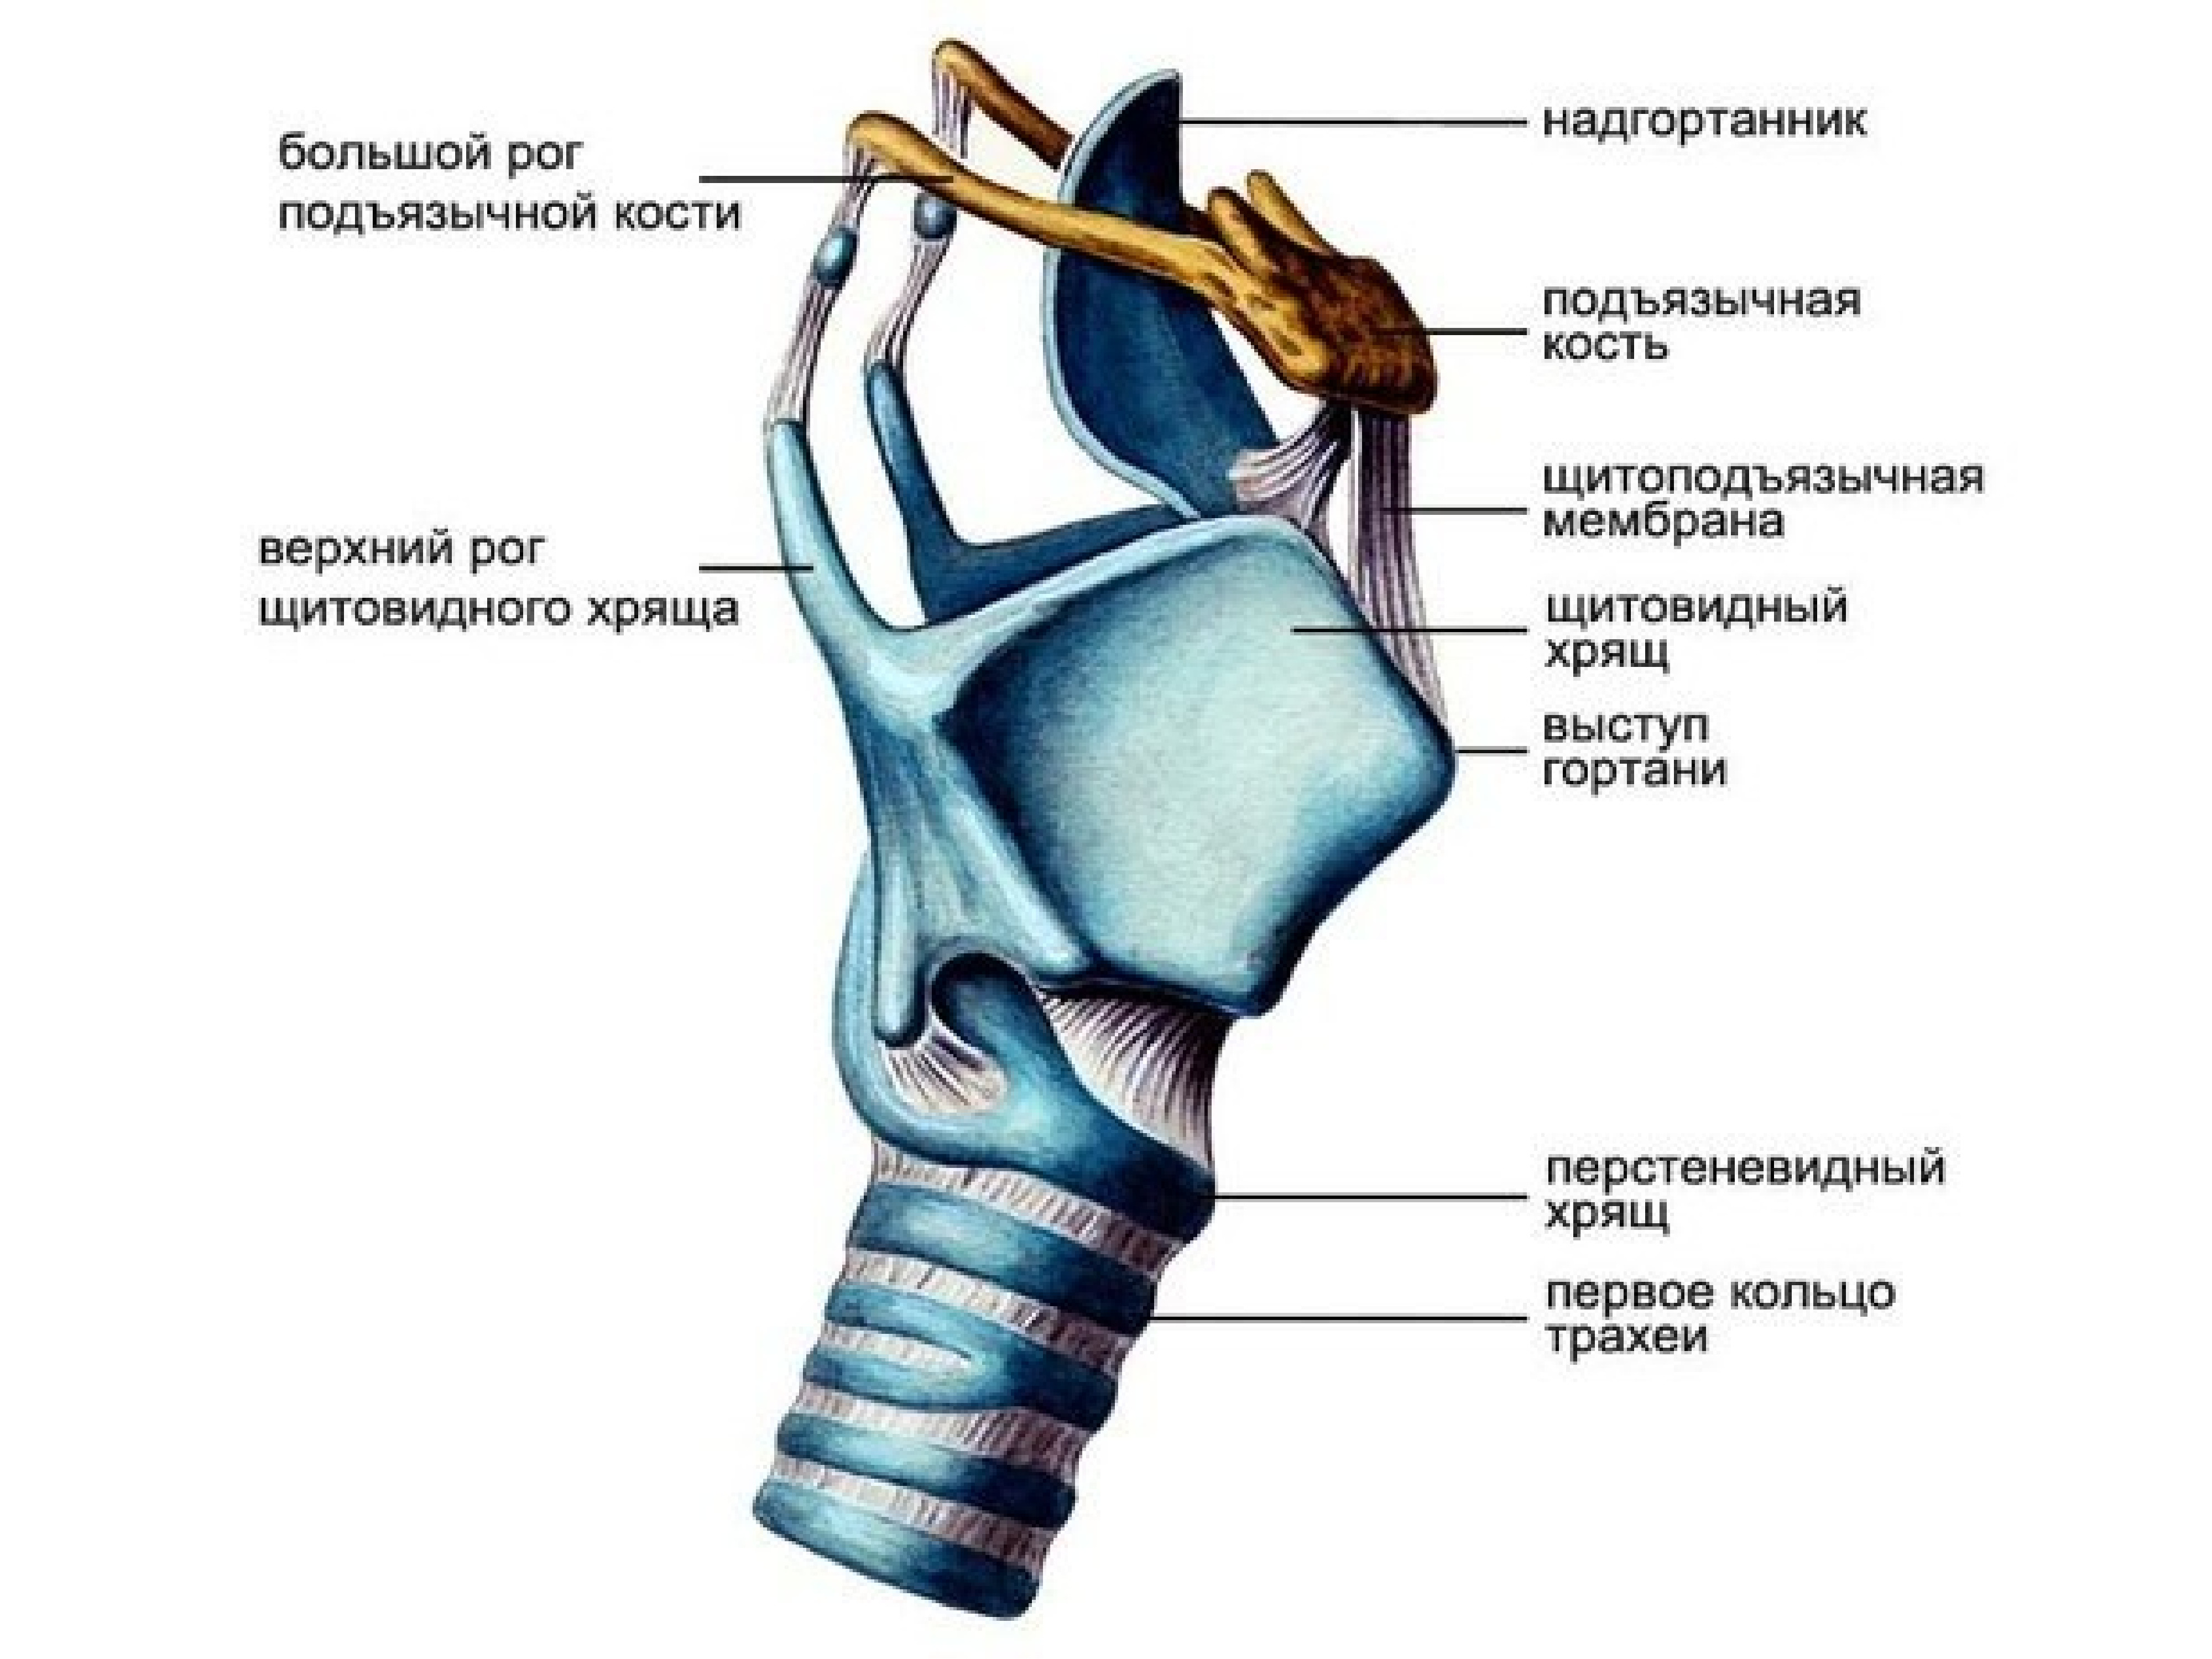 Состав гортани входит. Гортань строение анатомия хрящи. Строение щитовидного хряща гортани. Хрящи гортани анатомия человека. Перстневидный хрящ анатомия гортани.